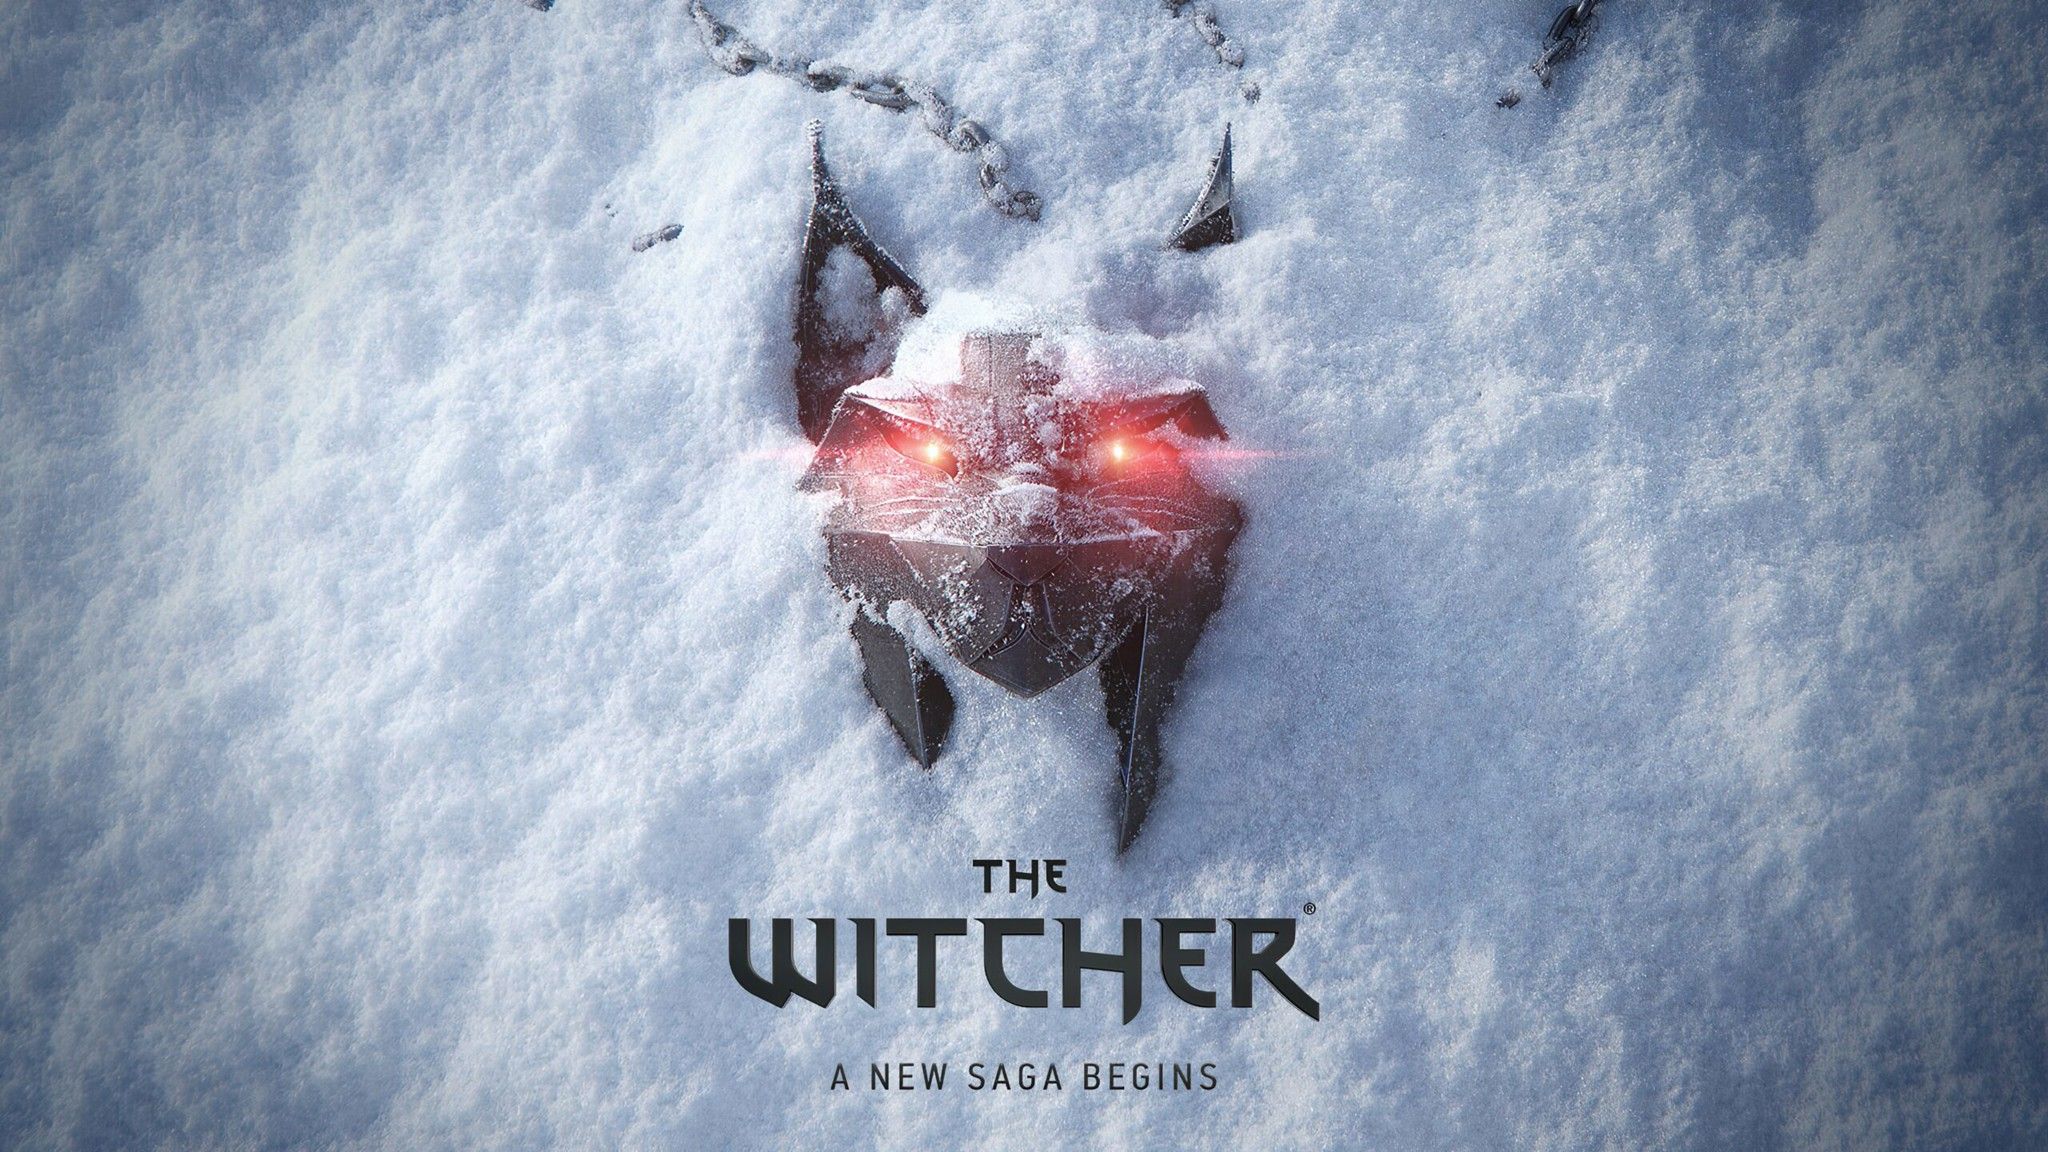 Sau thảm họa Cyberpunk 2077, CD Projekt xác nhận đang làm phần The Witcher mới